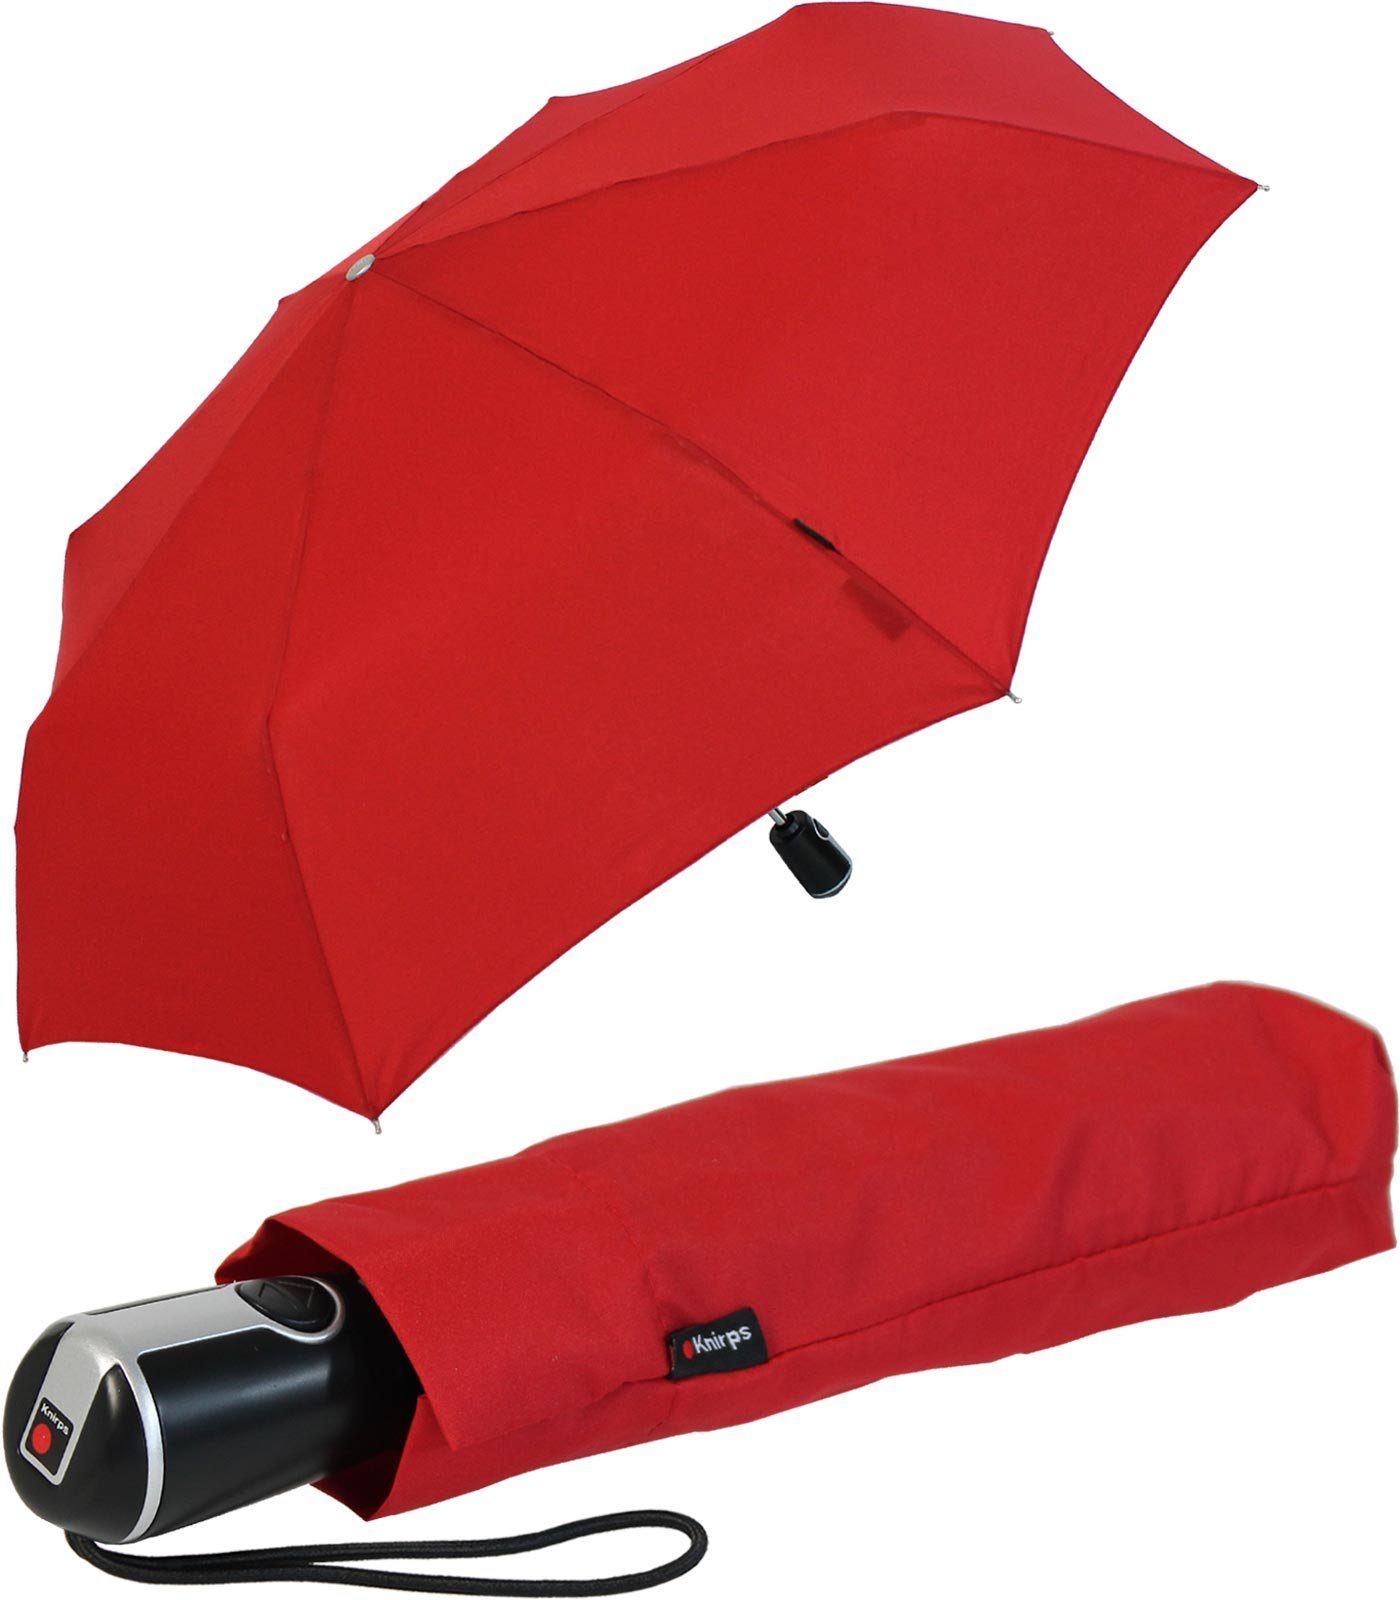 Knirps® Taschenregenschirm Large Duomatic mit Auf-Zu-Automatik, der große, stabile Begleiter rot